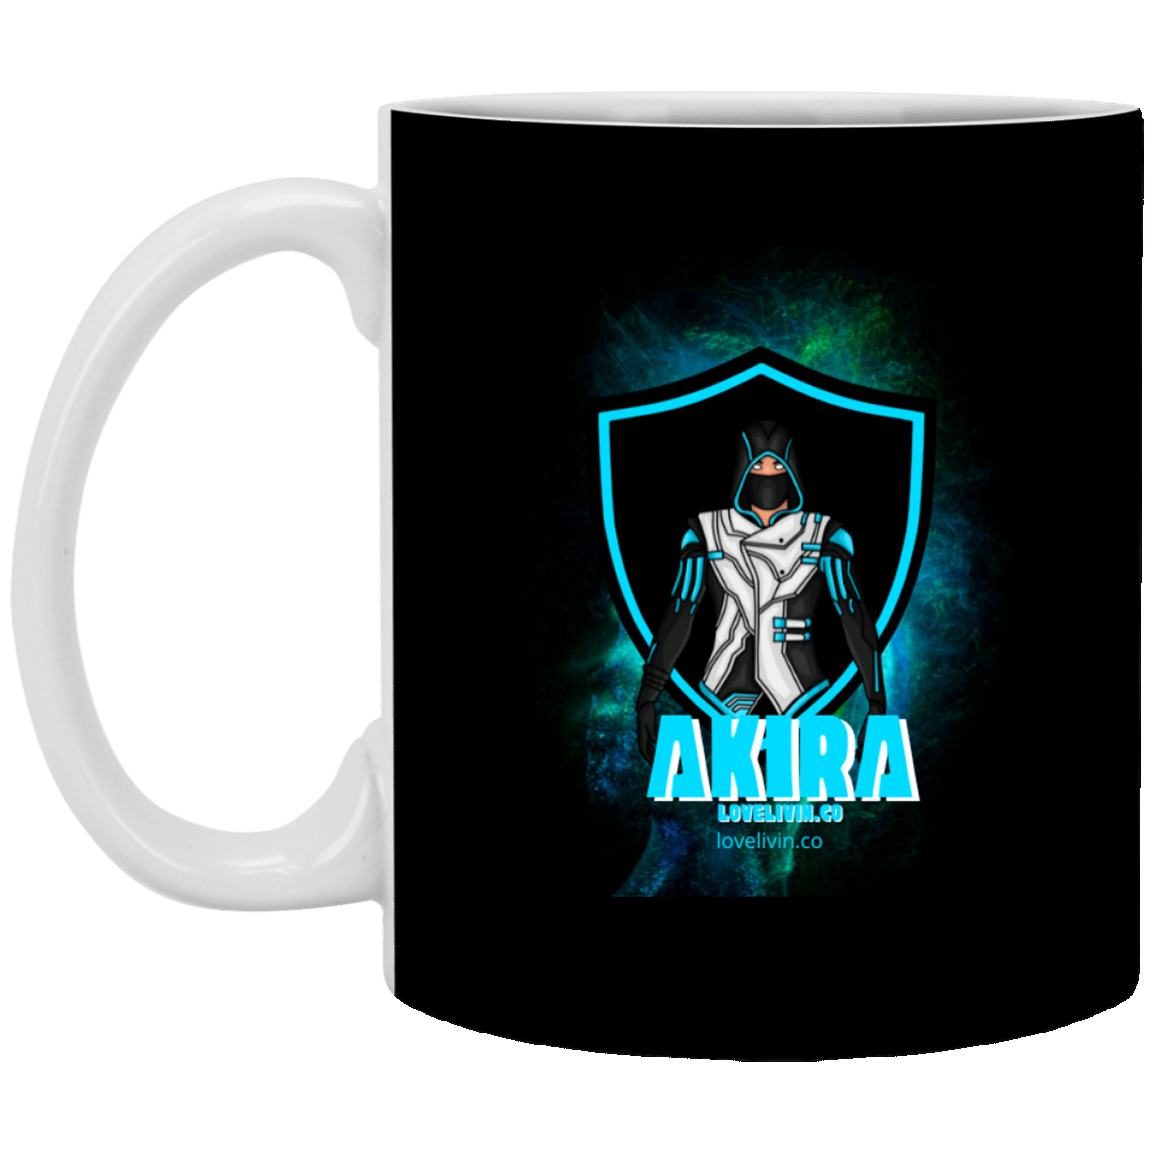 AKIRA WORRIER CUP 11 oz. White Mug